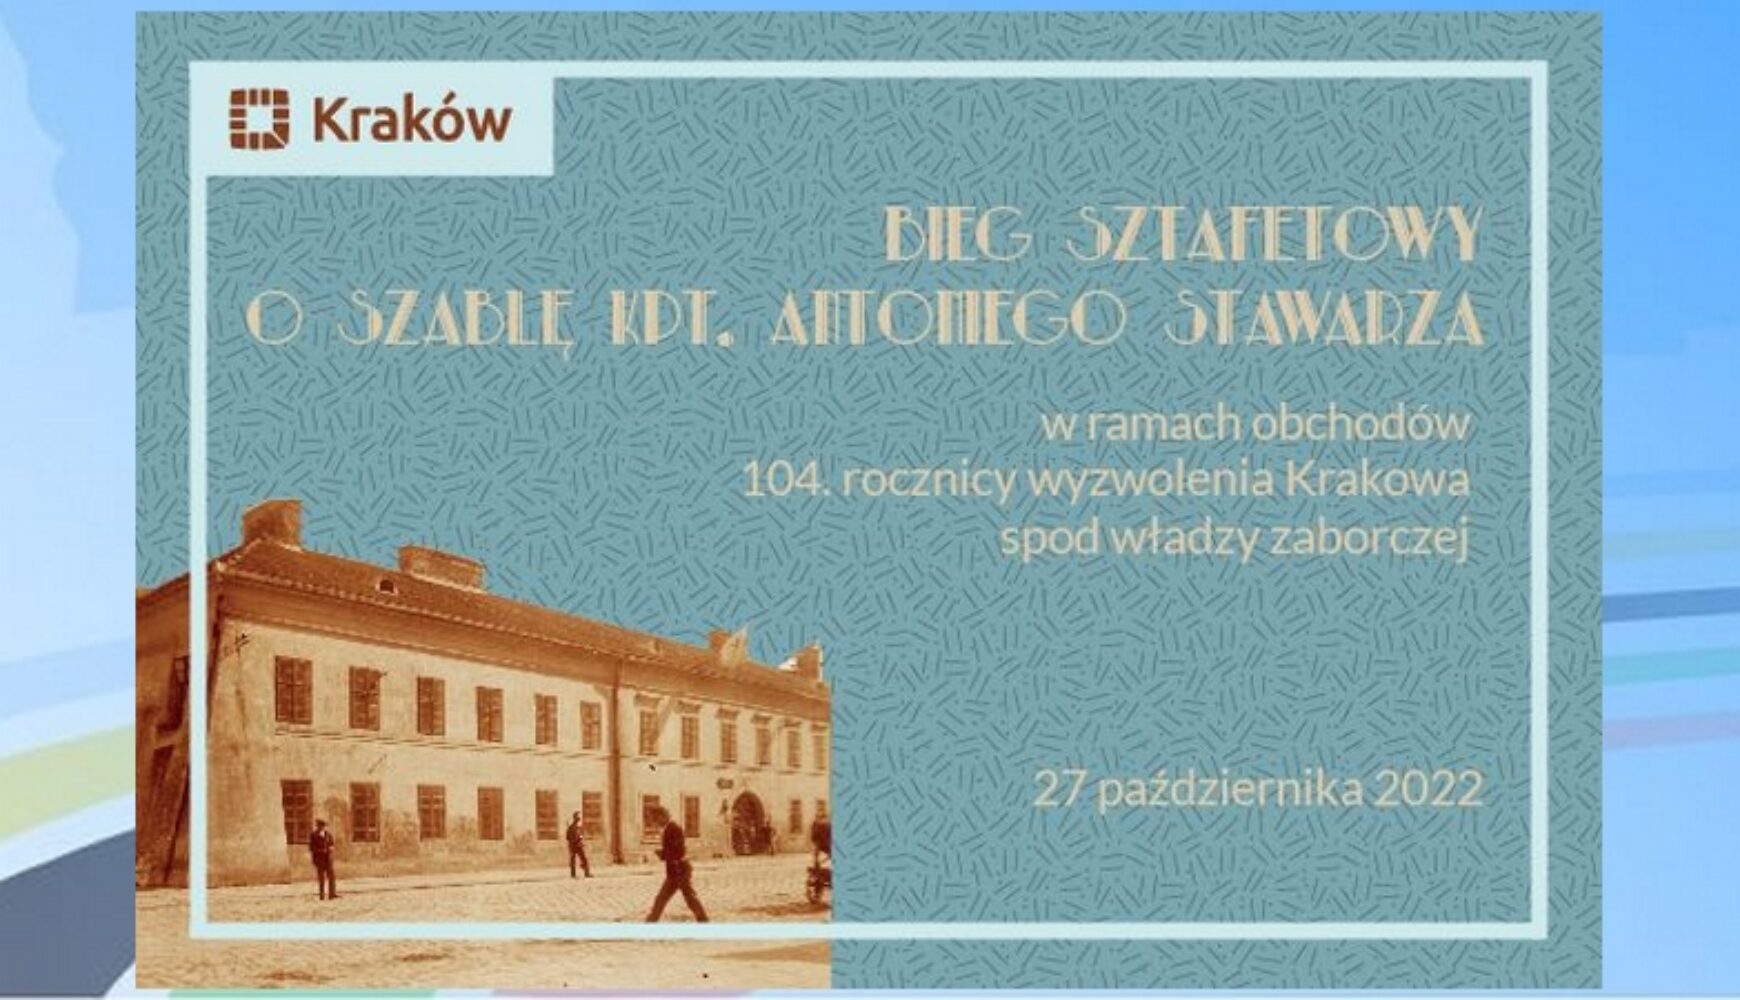 Bieg o Szablę Kapitana Antoniego Stawarza w 104 rocznicę wyzwolenia Krakowa